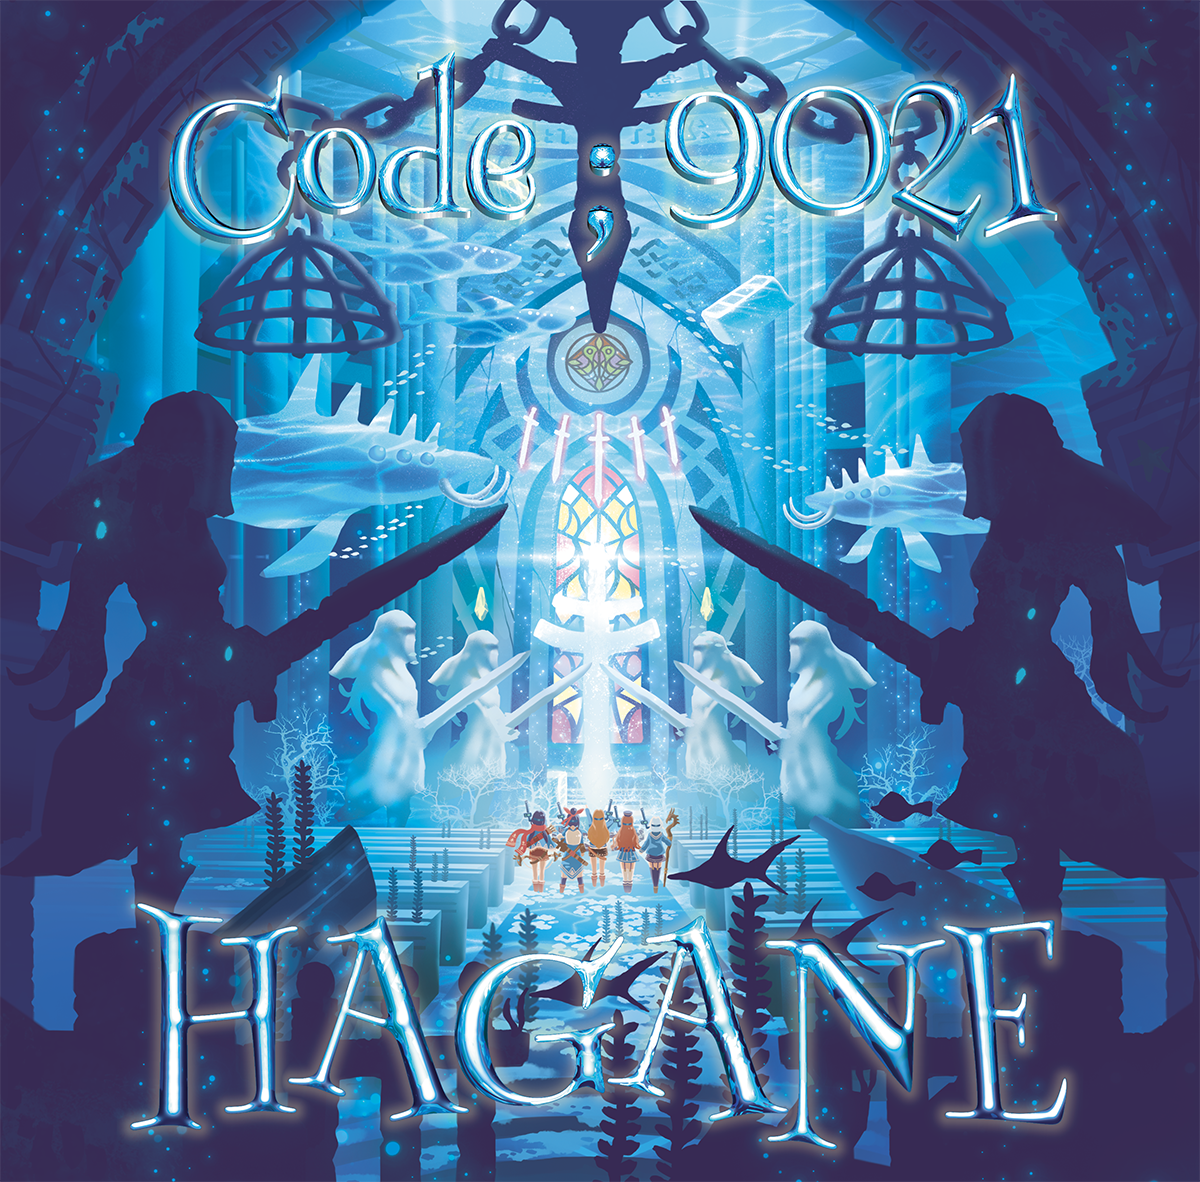 HAGANE 1st Full Album 「Code ; 9021」